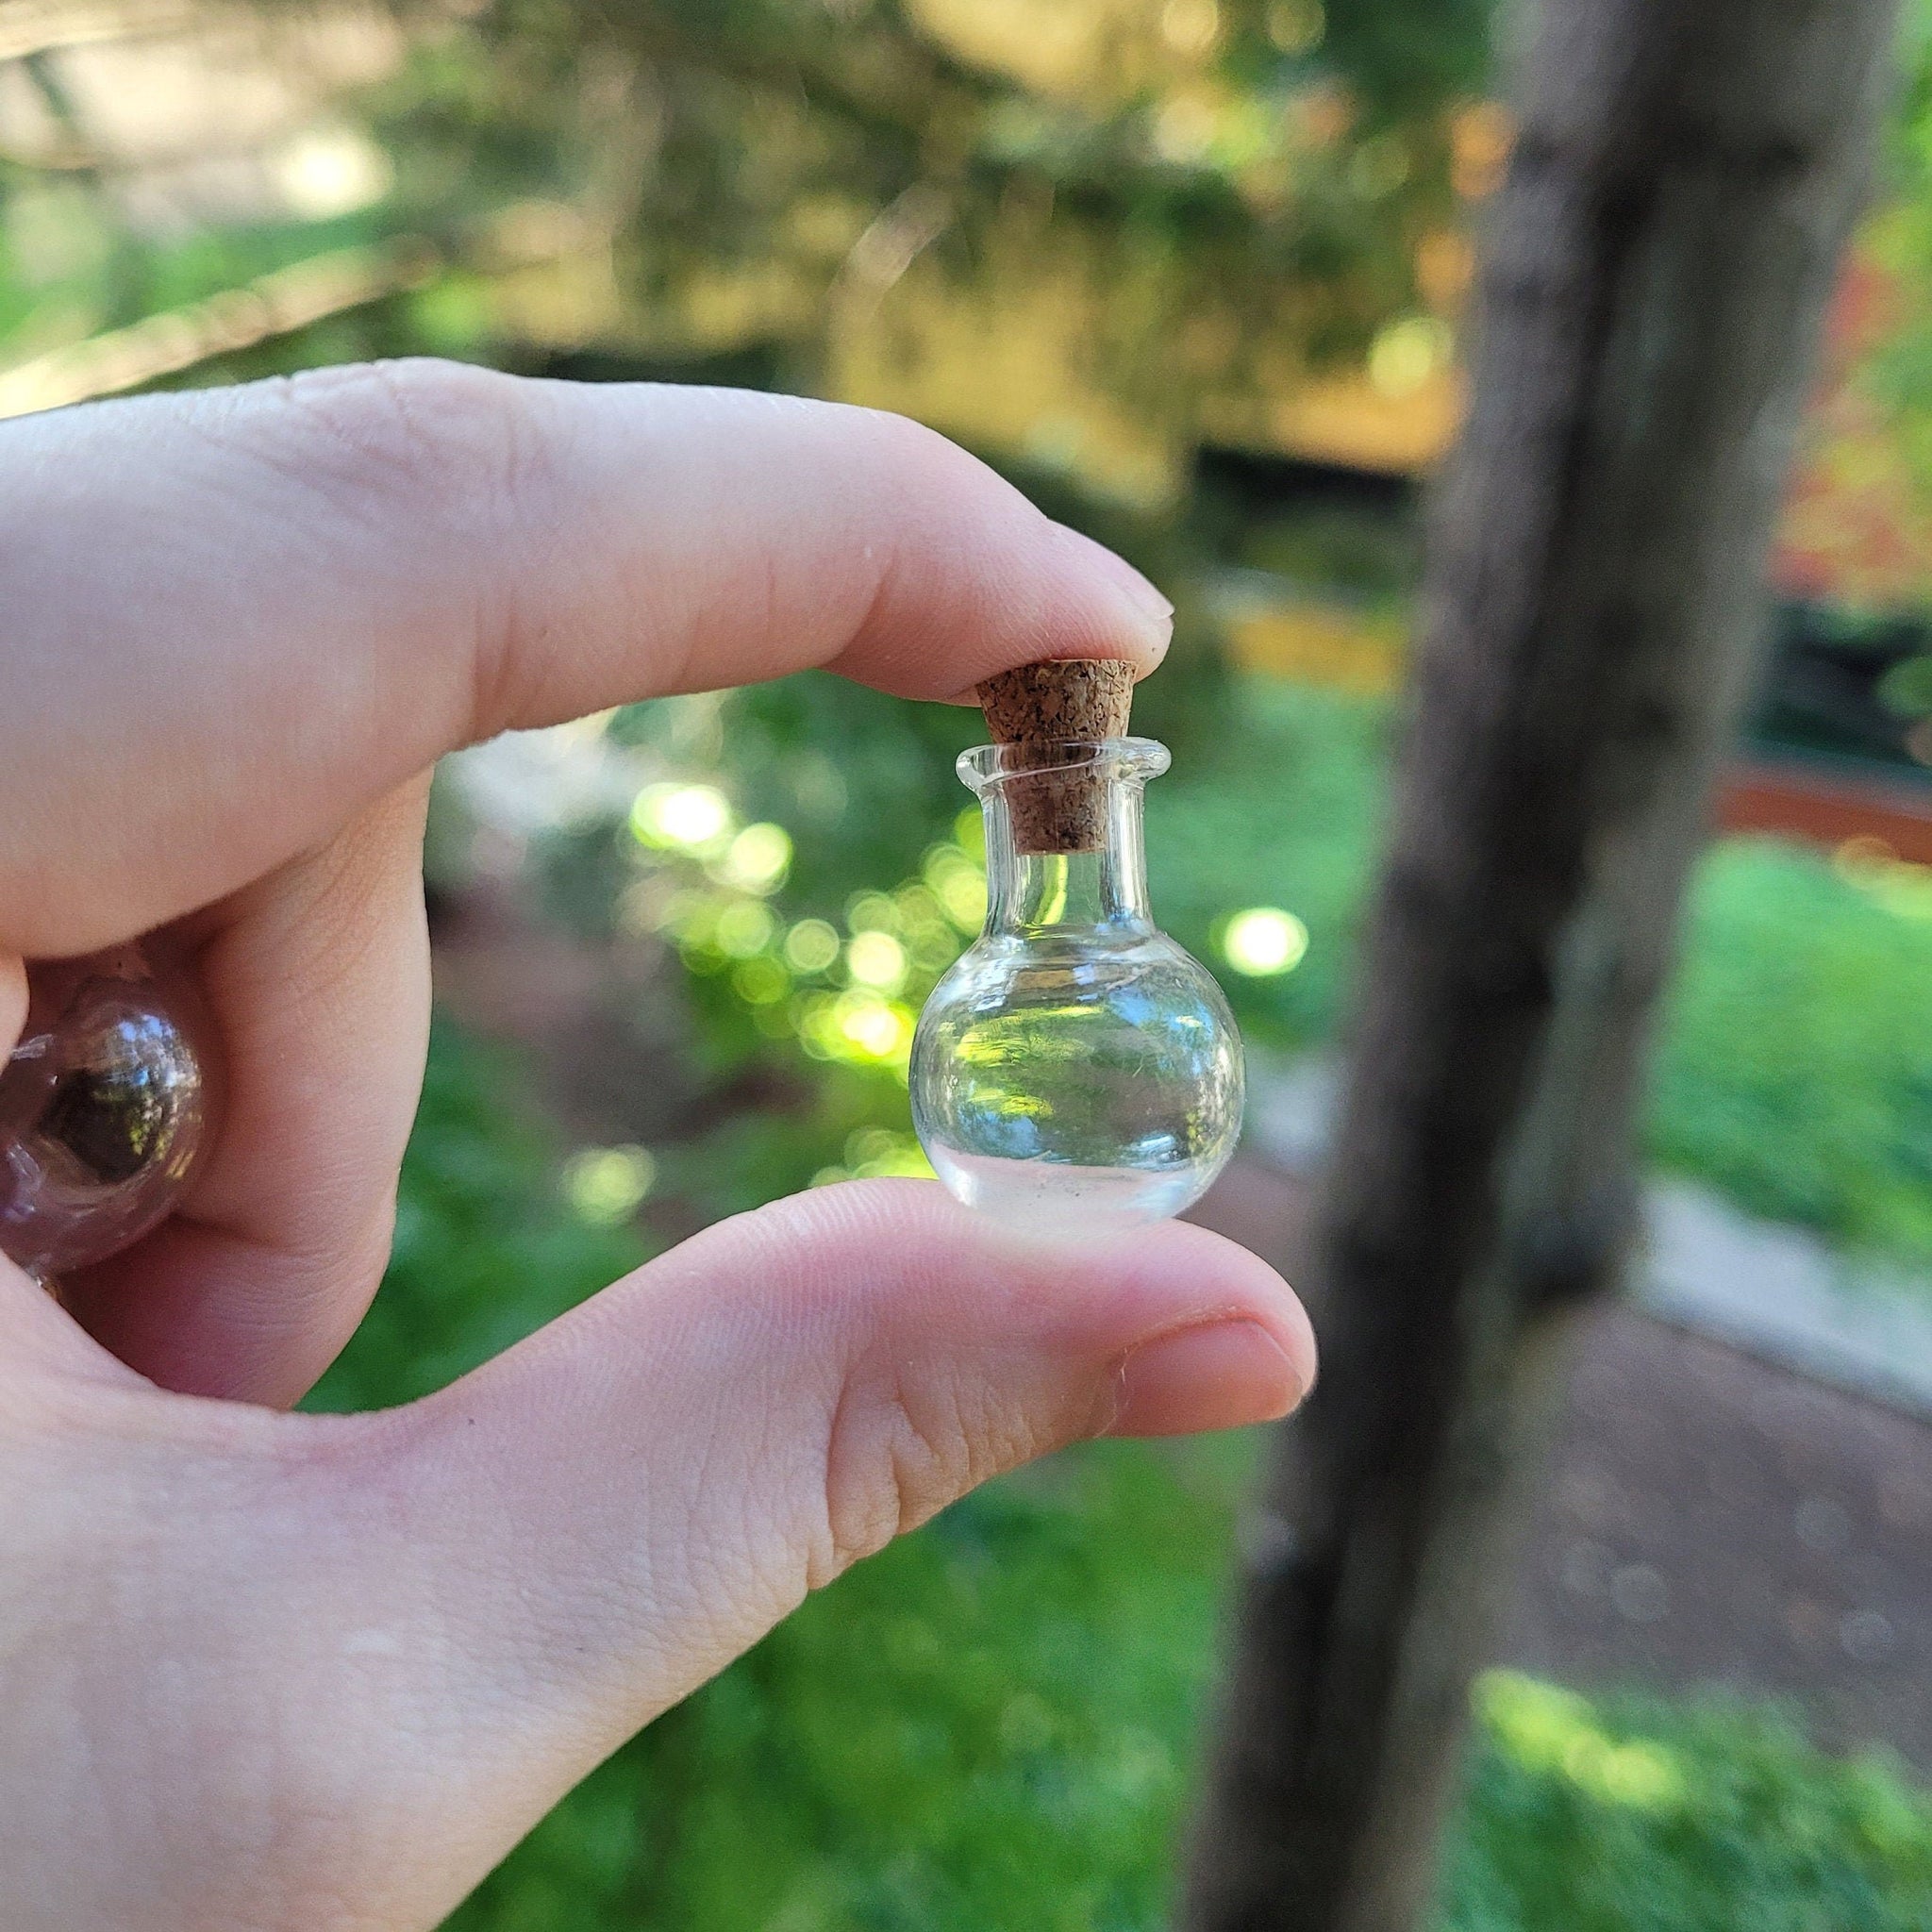 Mini Potion Bottles 6pk - 2ml Glass w/ Cork – Waterbear Wizard